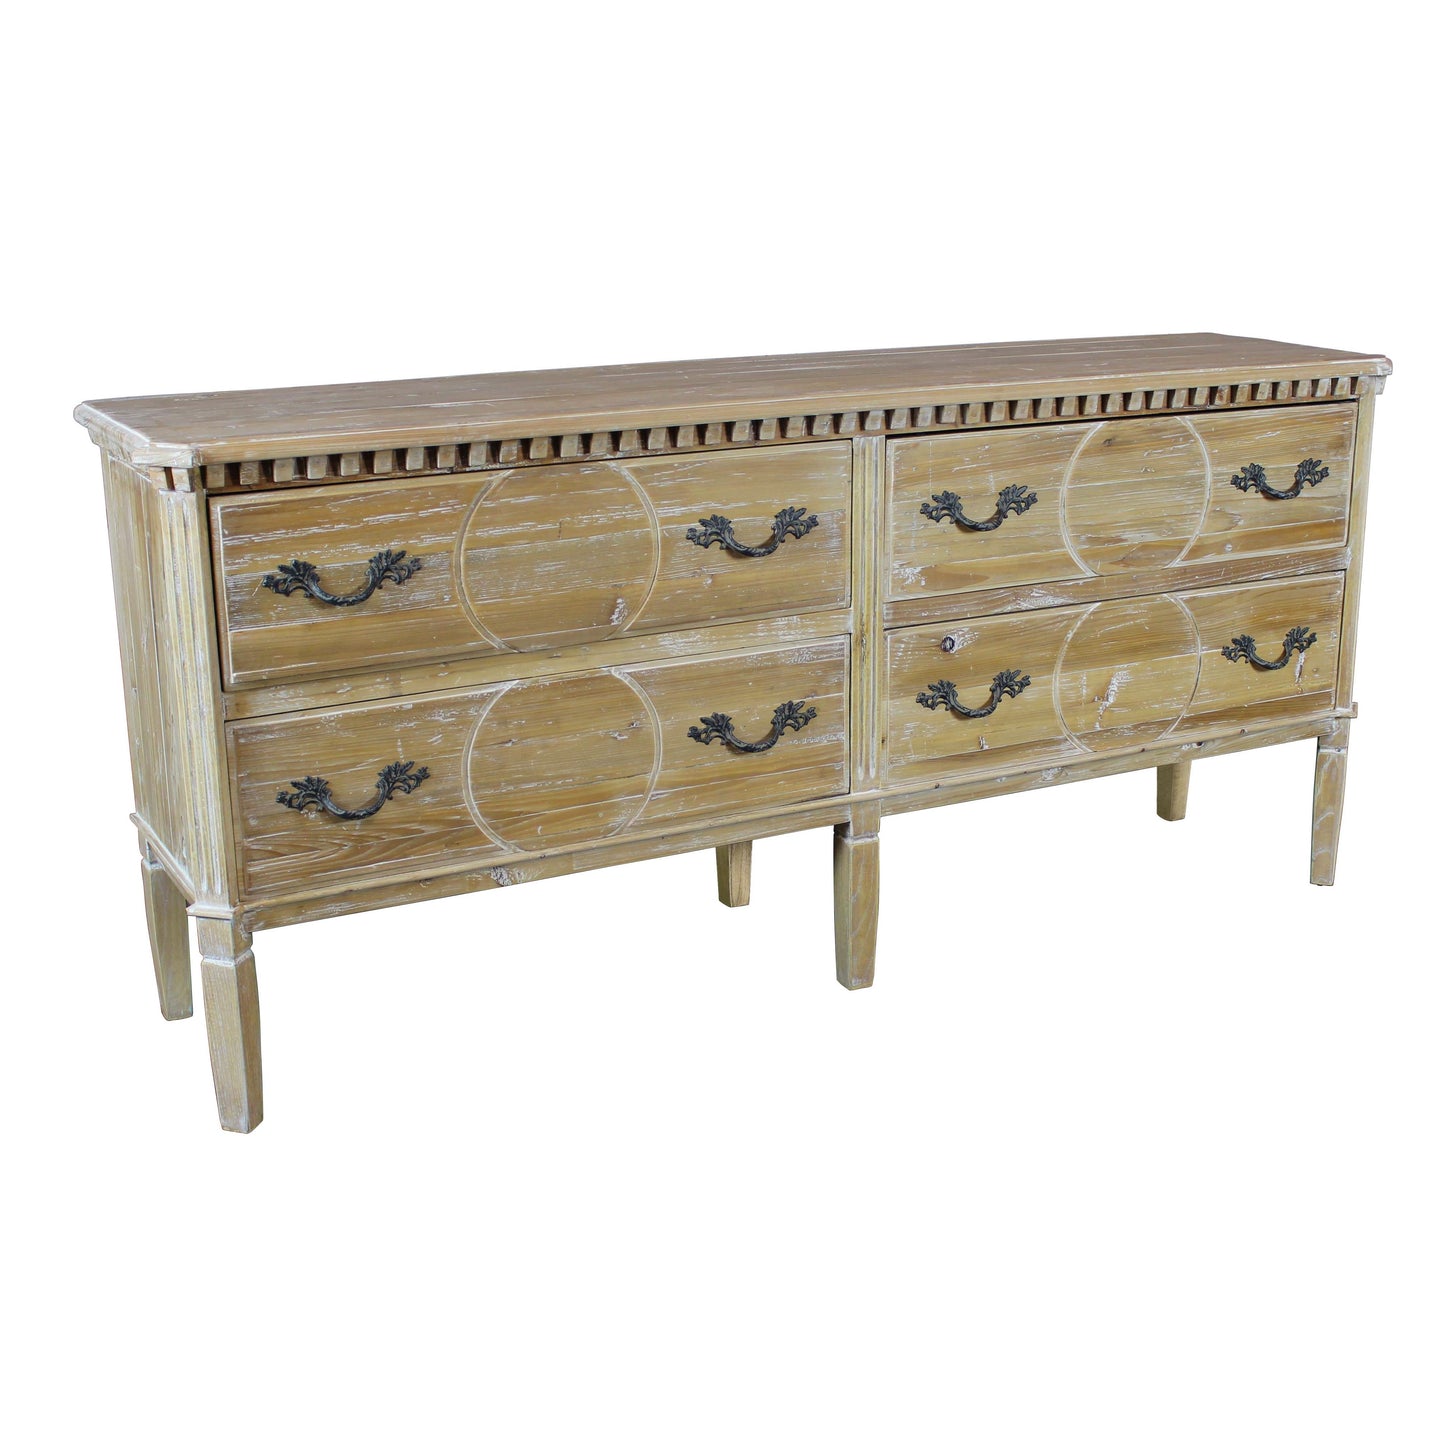 Victoria 4 Drawer Dresser, driftwood